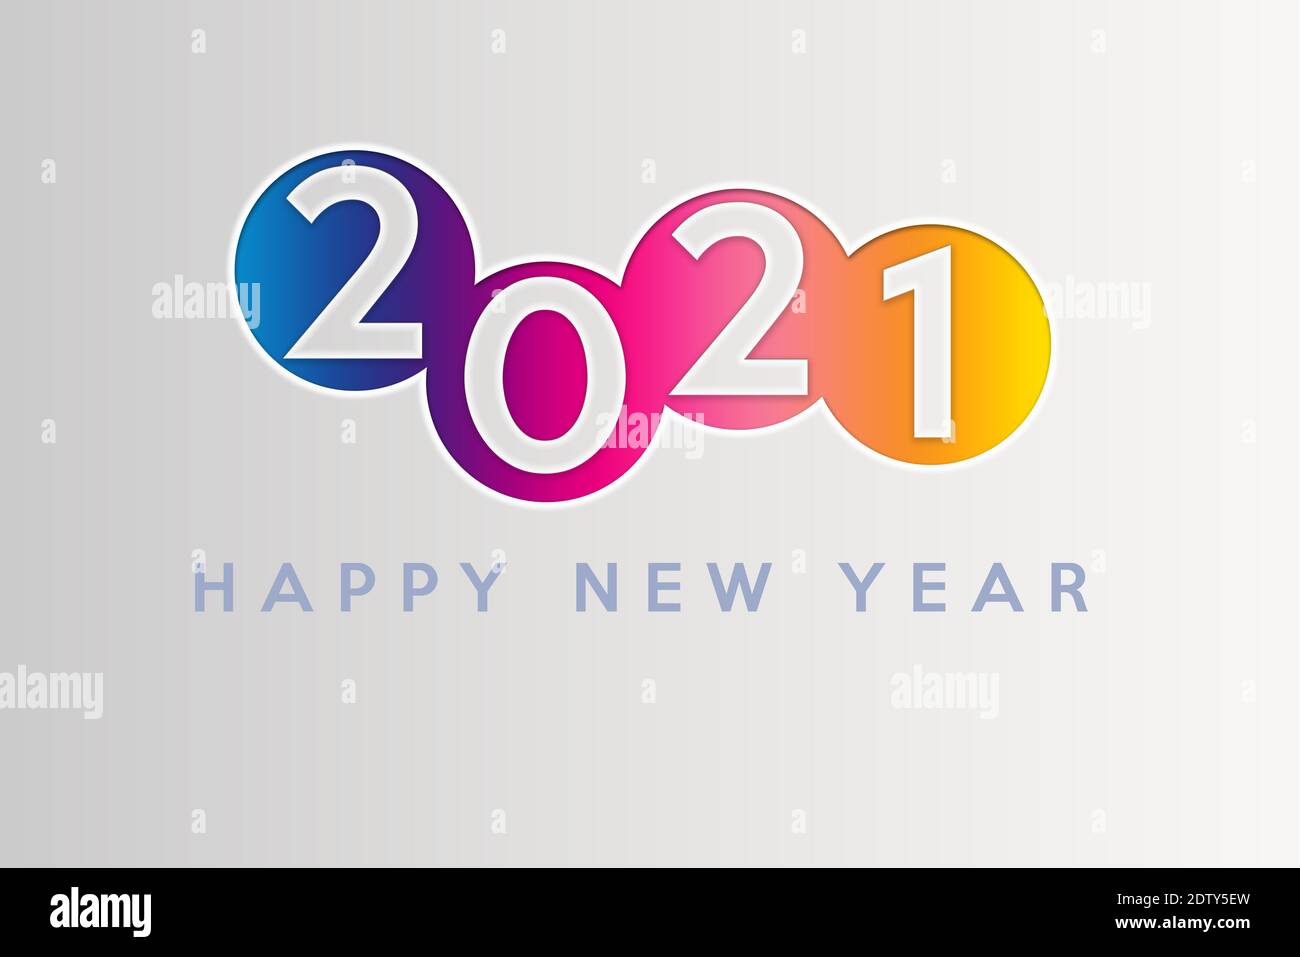 Historique de la carte du nouvel an 2021. Carte de voeux avec texte du nouvel an sur fond blanc dégradé. Design coloré. Banque D'Images